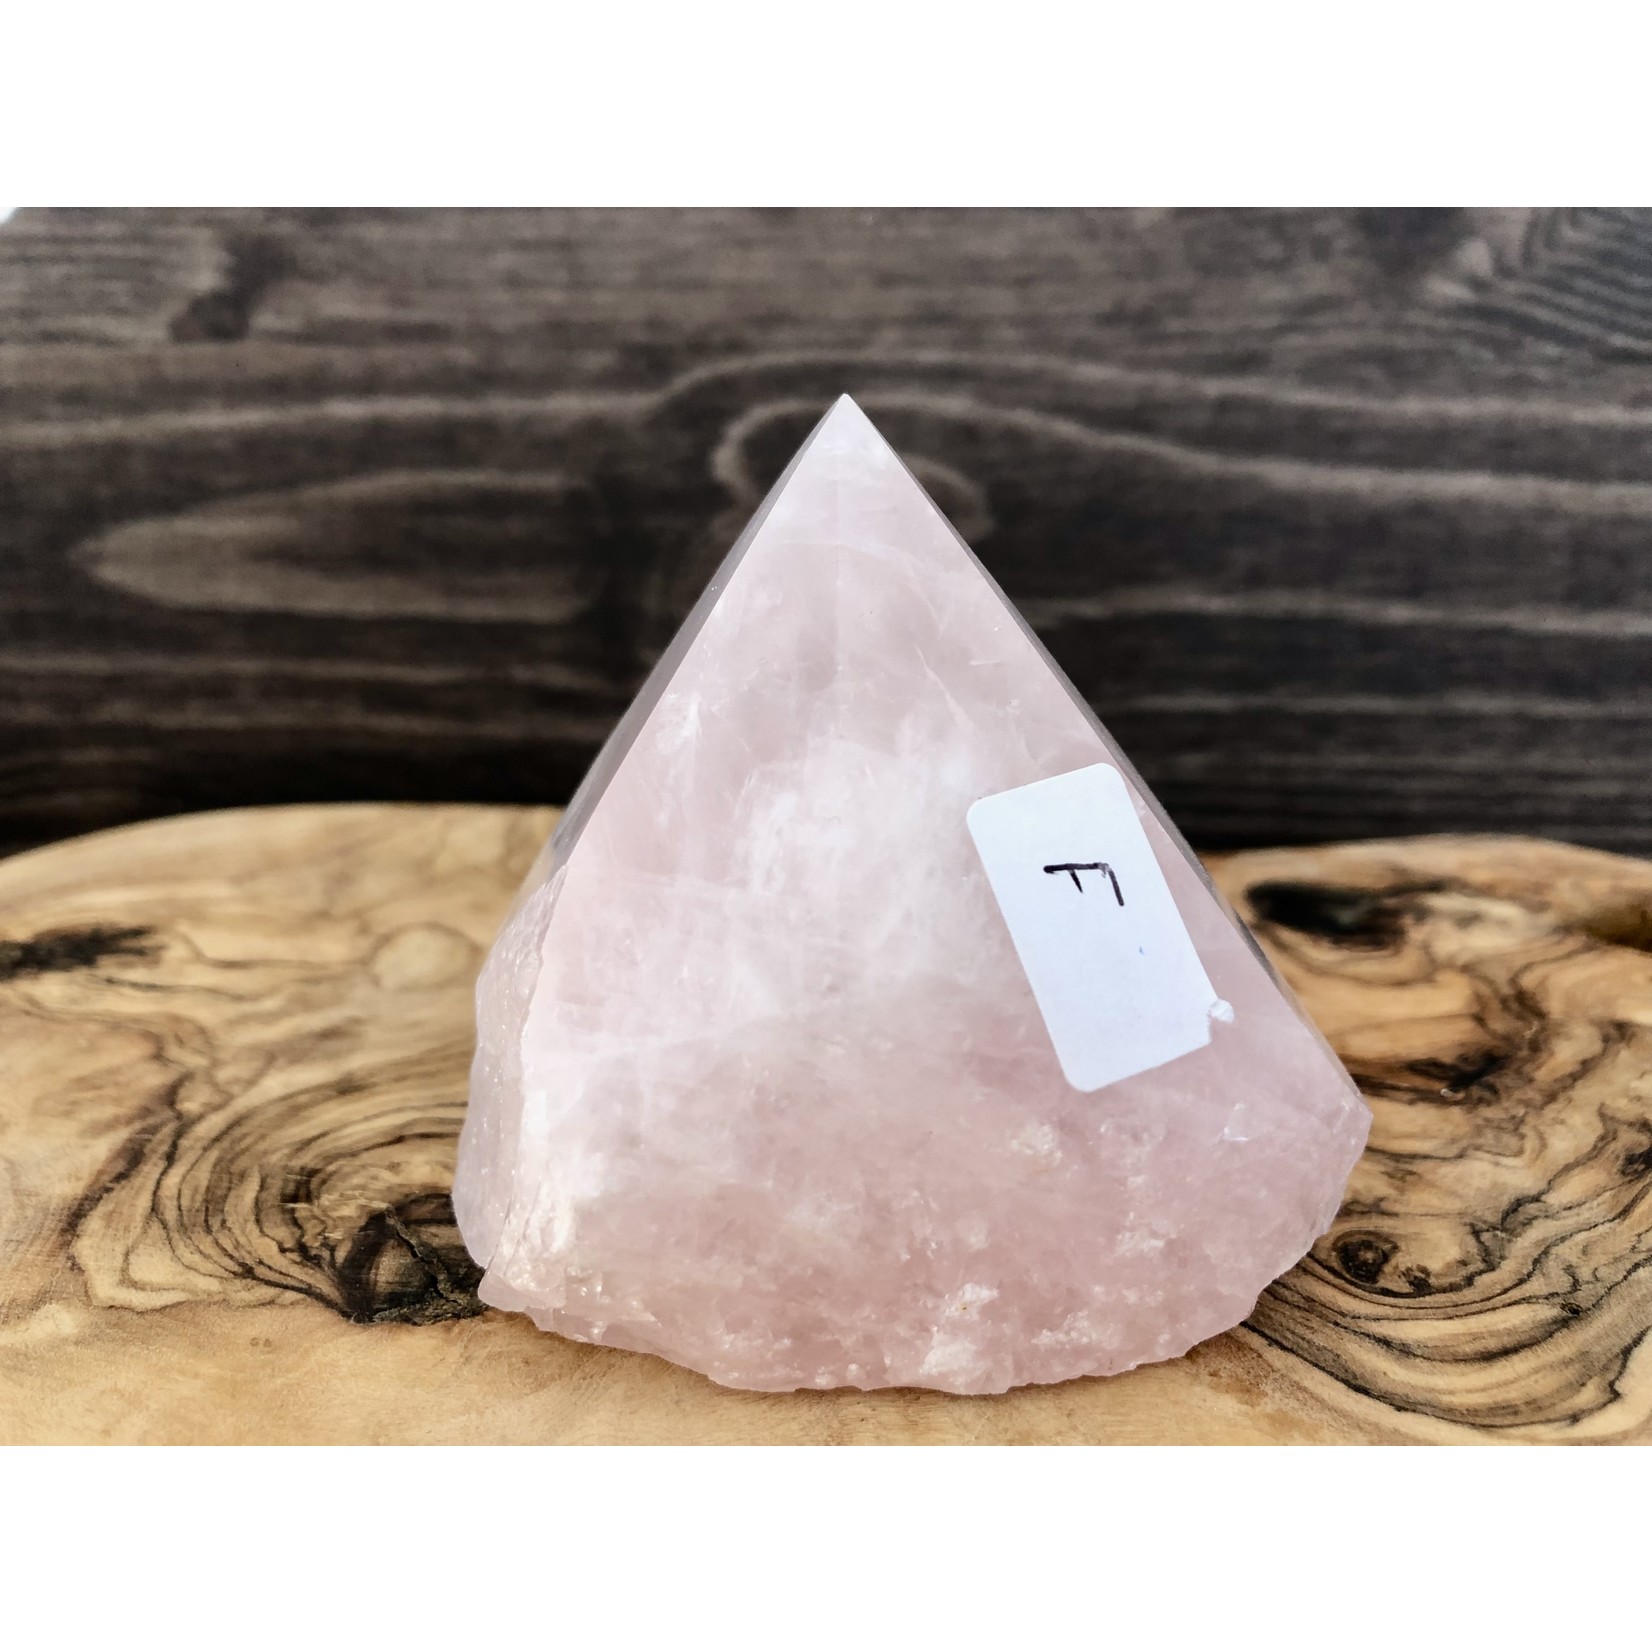 Tour de cristal de quartz rose, pointe de quartz rose, pointe de cristal de quartz rose, grandes pointes de quartz rose